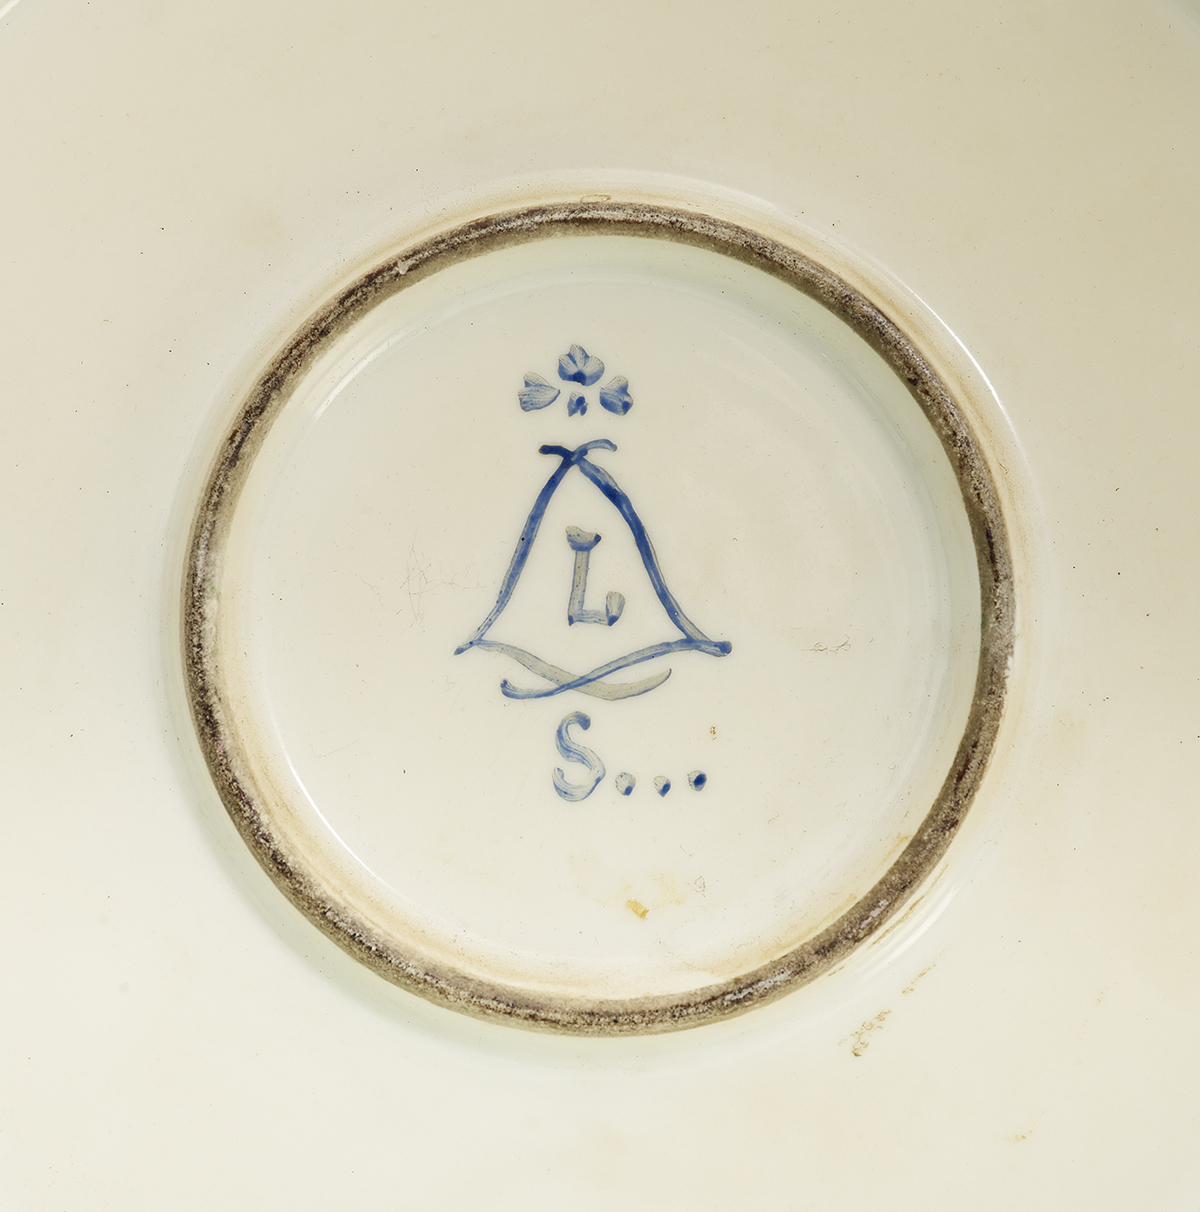 Paris or Limoges Porcelain Platter - Image 2 of 2